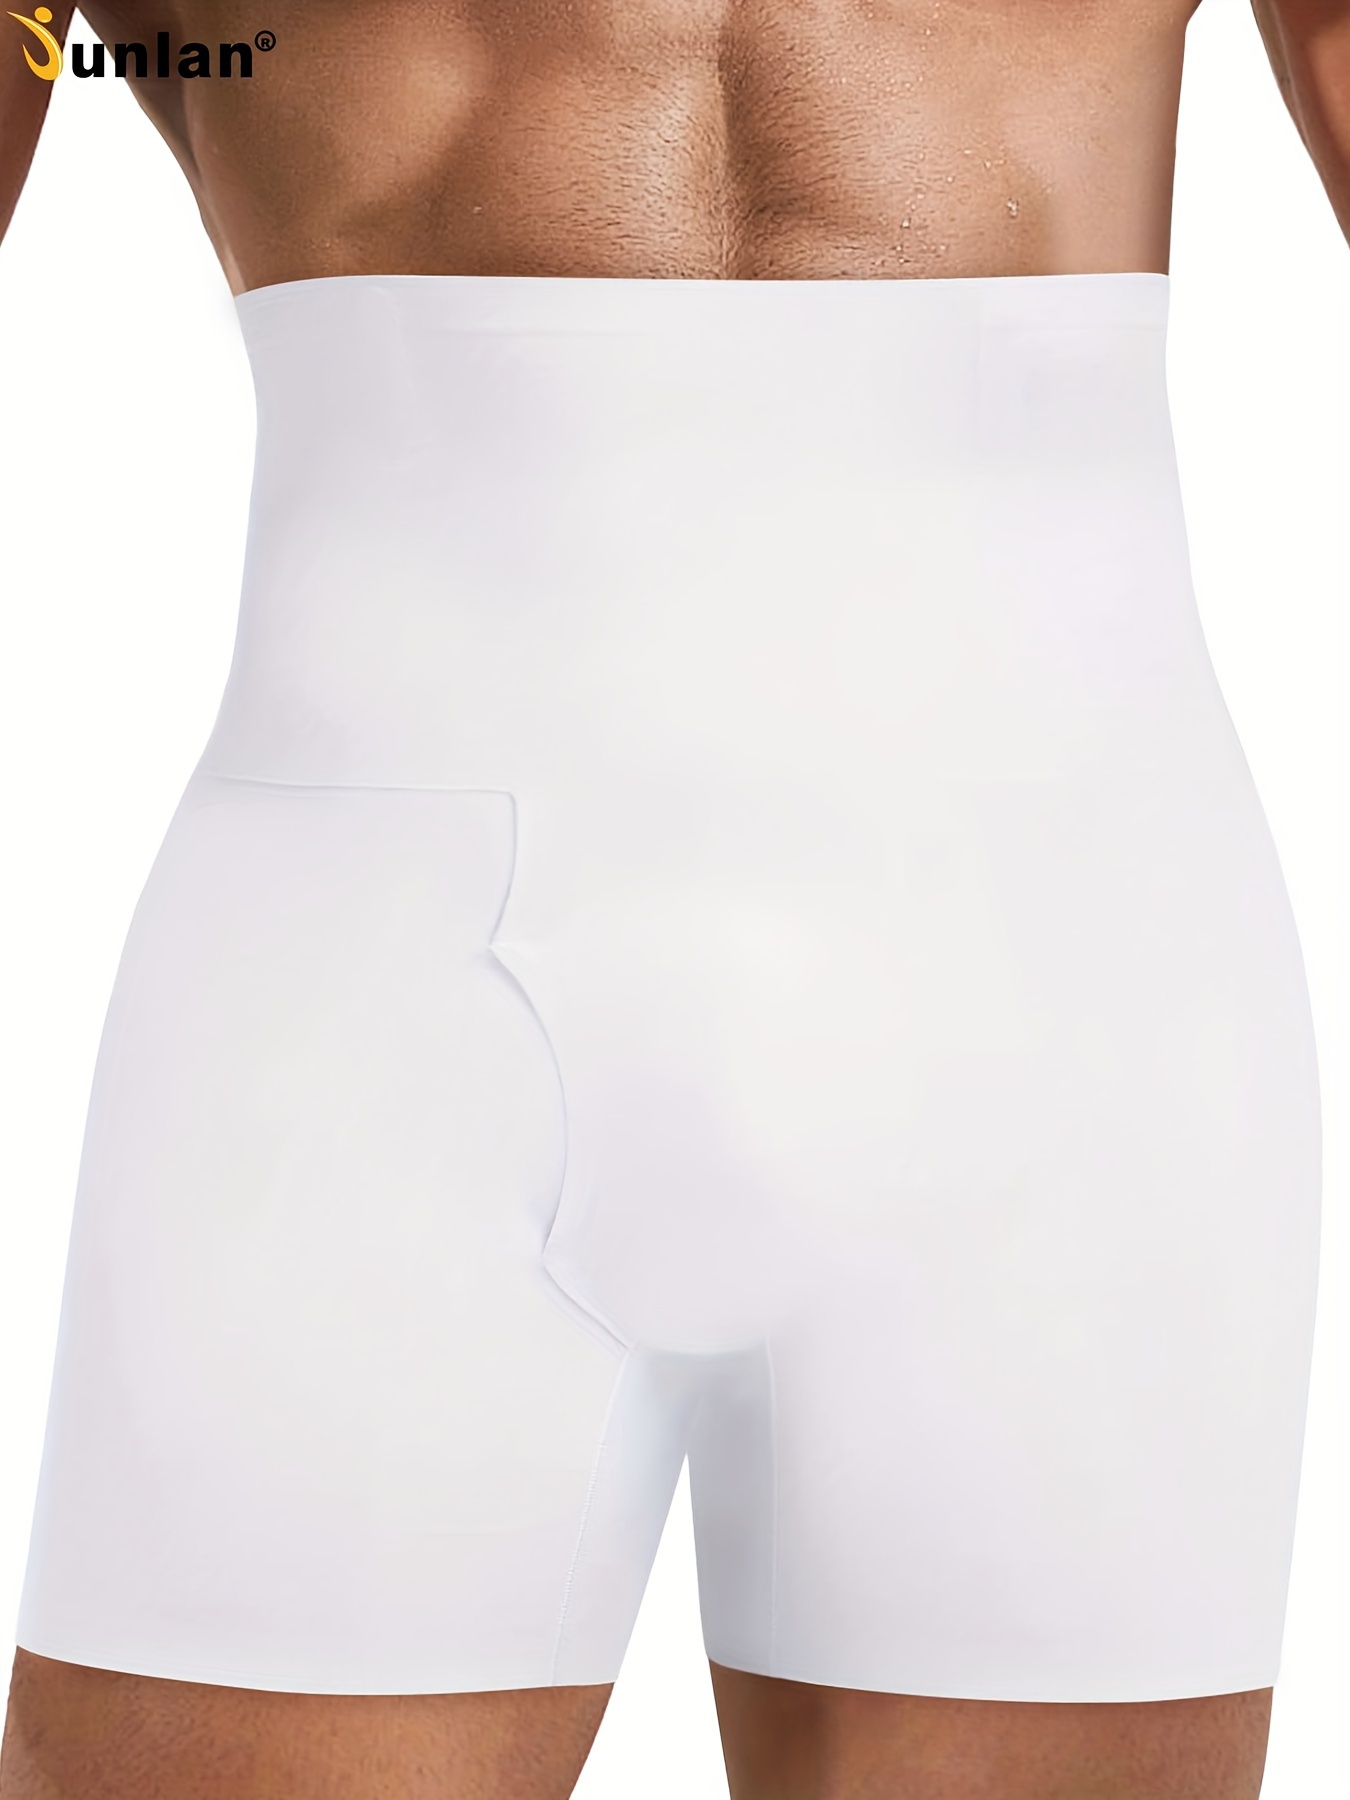 Junlan Bóxers de compresión de cintura alta para control de abdomen y moldeado corporal para hombres